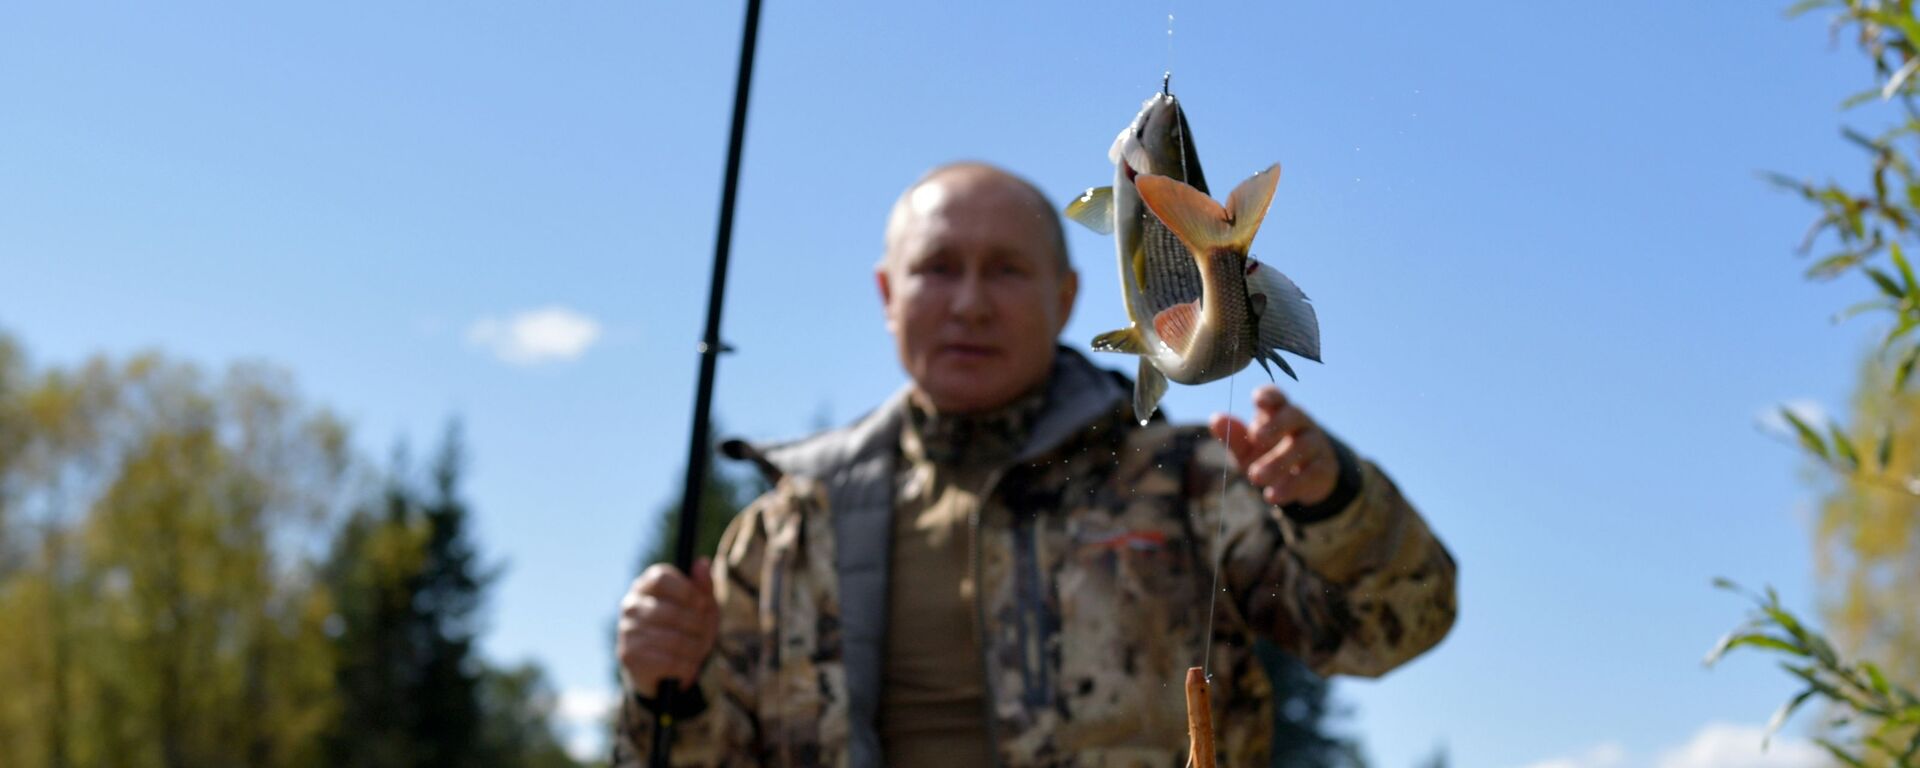 Trong thời gian kỳ nghỉ ở Siberia, Tổng thống Nga Vladimir Putin cùng với Bộ trưởng Quốc phòng Sergei Shoigu đã qua đêm giữa rừng taiga. - Sputnik Việt Nam, 1920, 26.09.2021